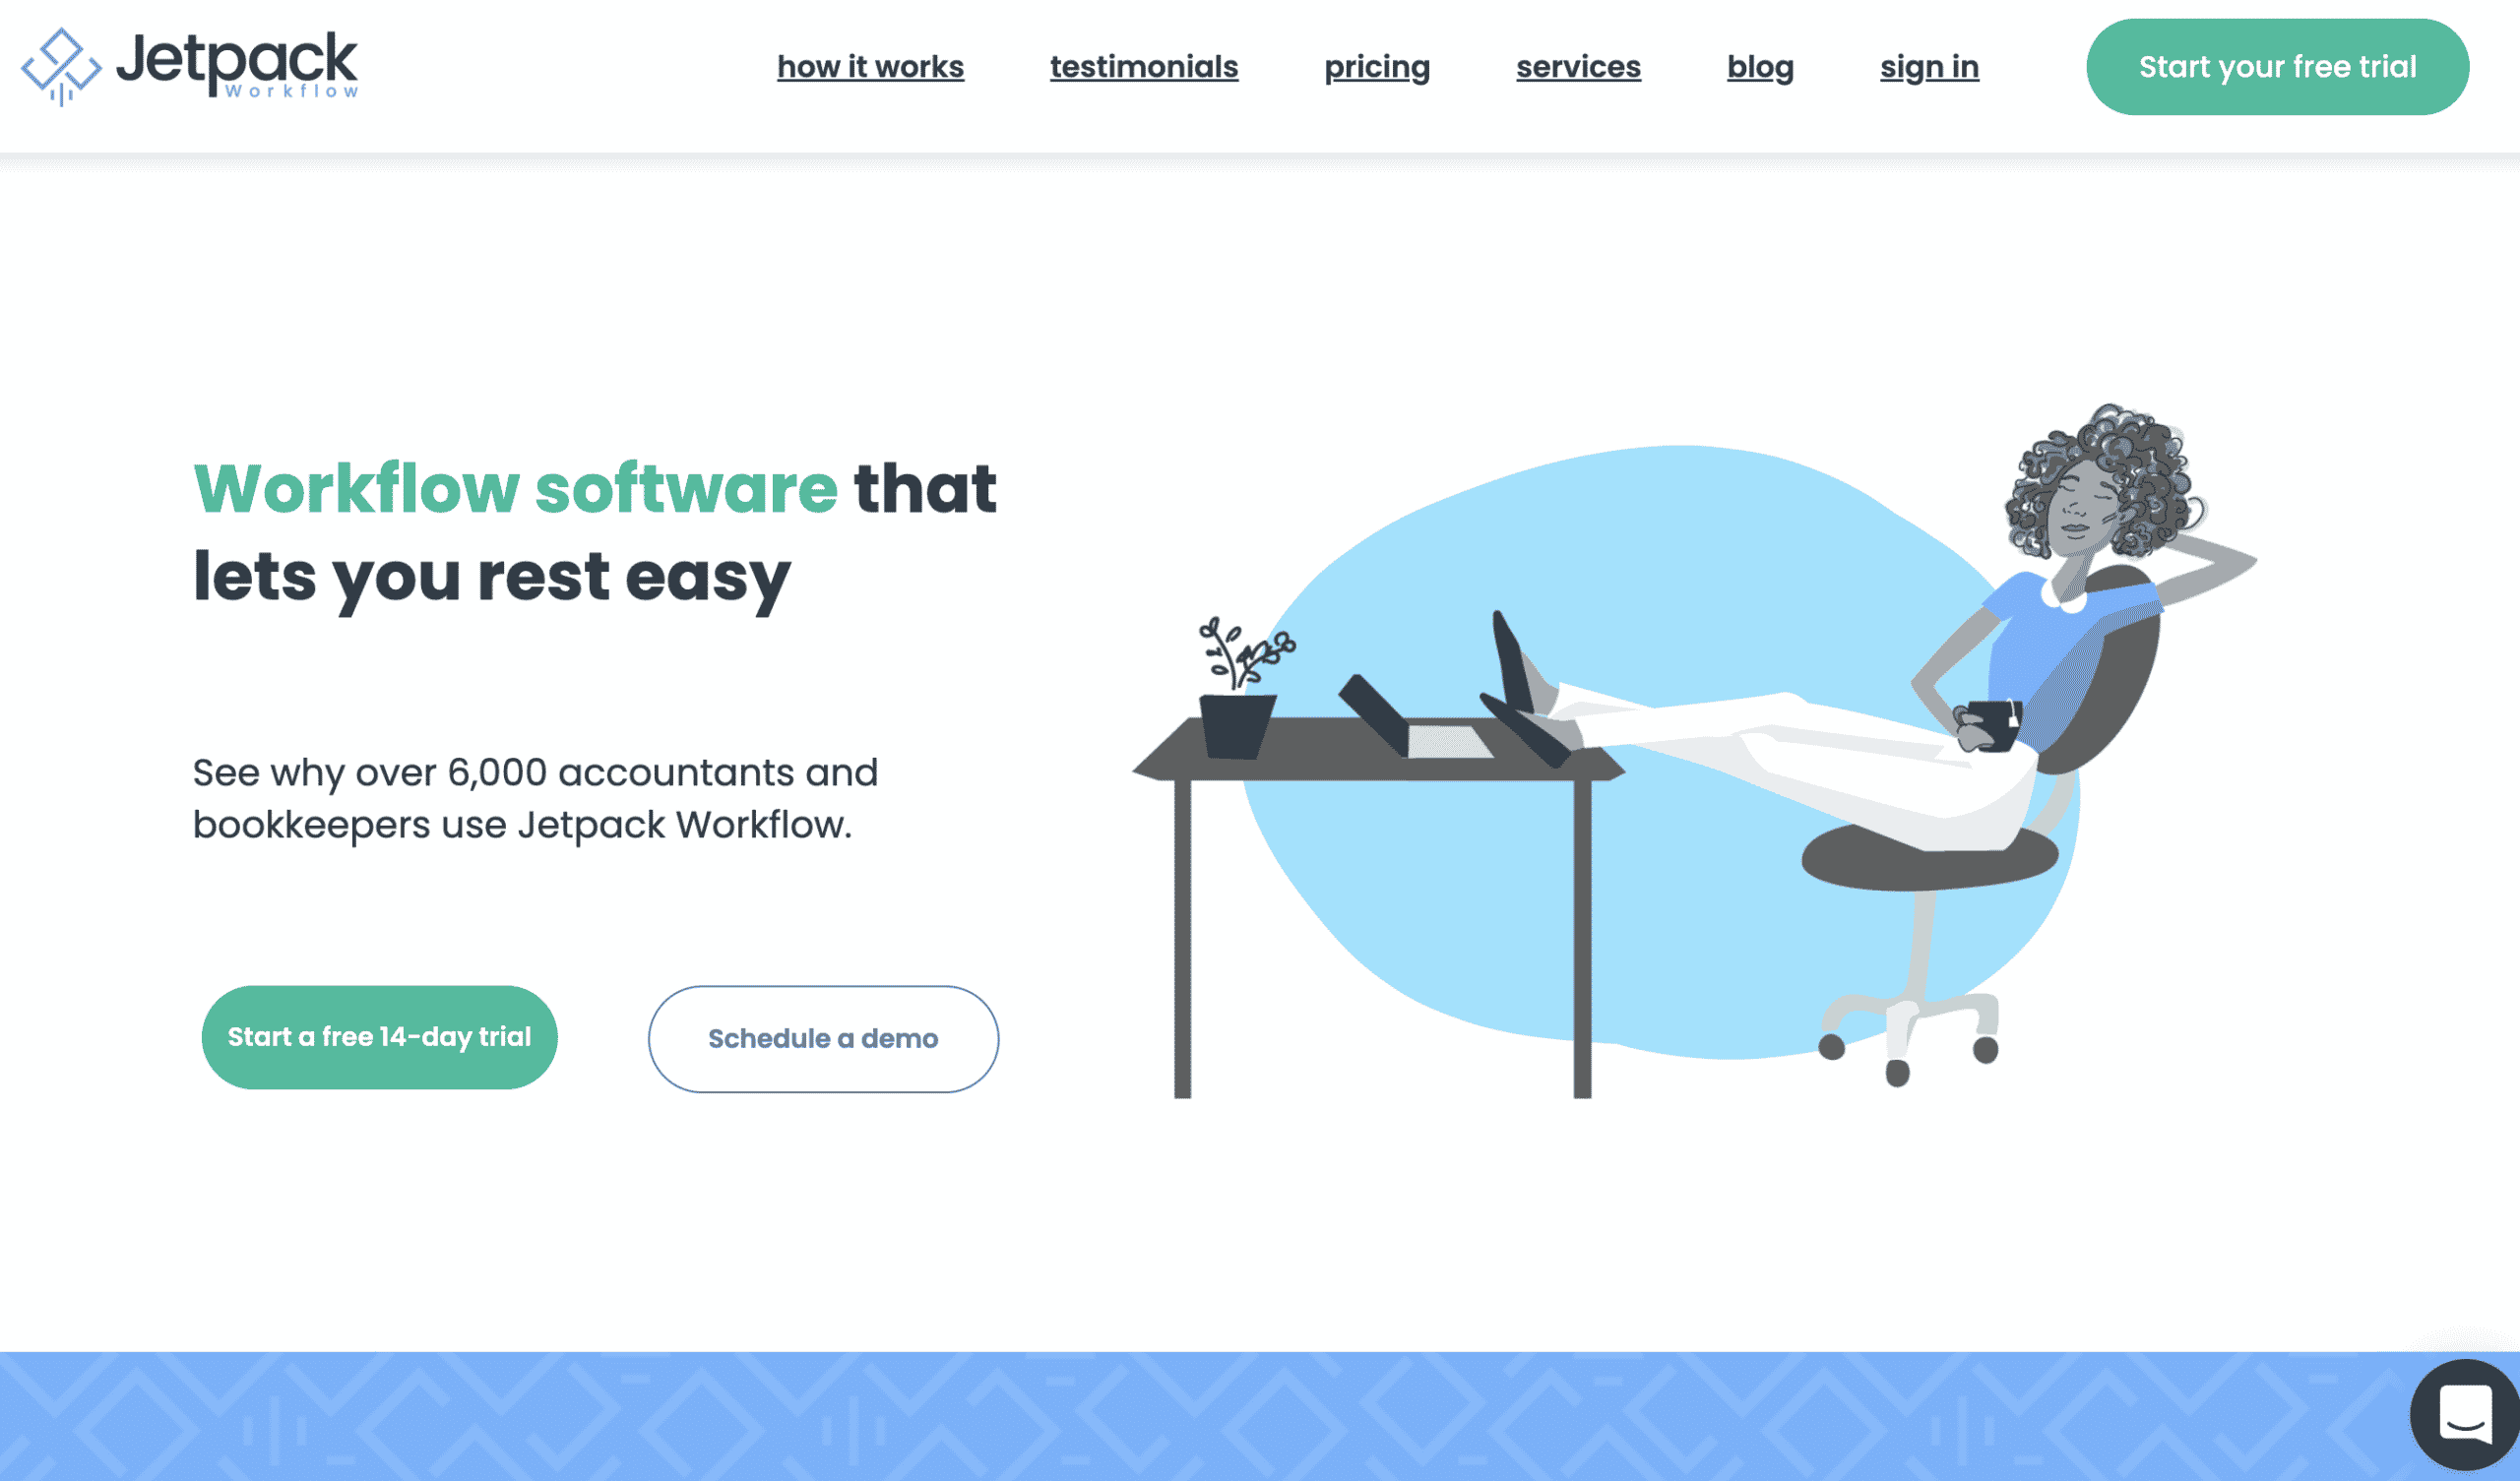 Image of Jetpack Workflow’s homepage